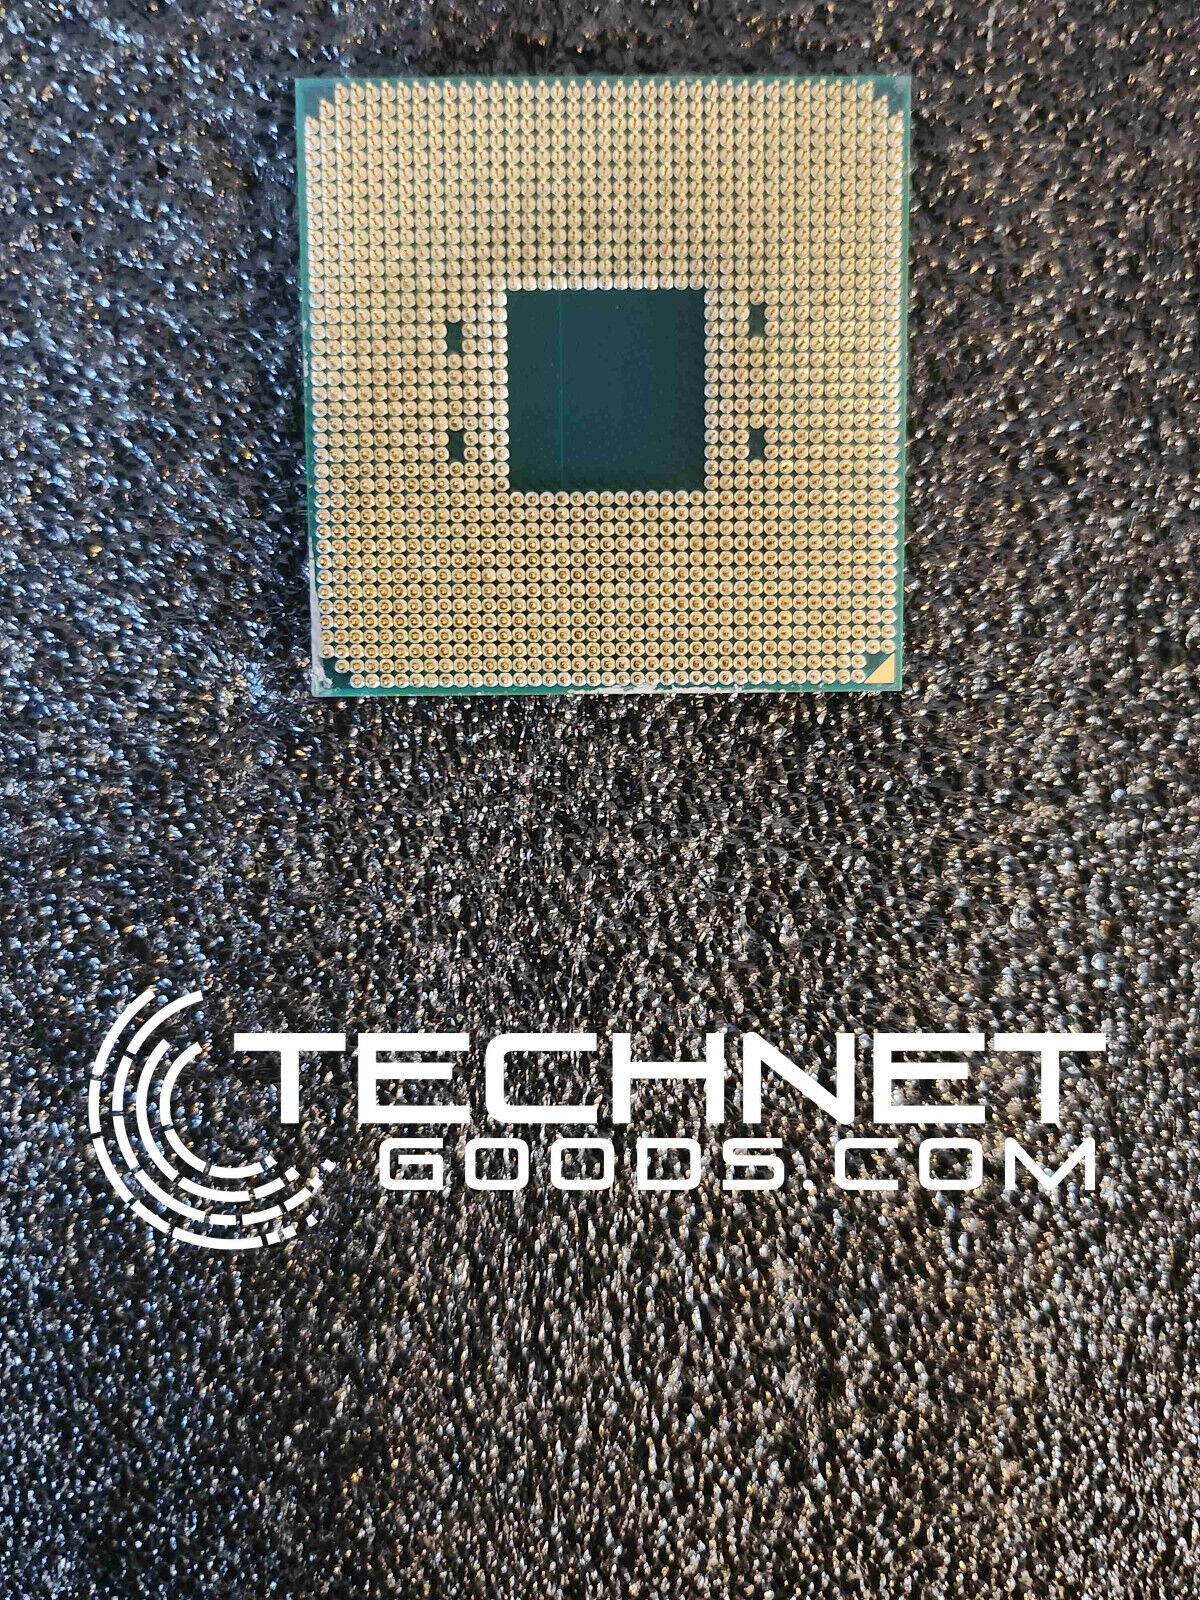 AMD Ryzen 5 5600X 3.7GHz (TURBO 4.4GHz) 6-Core AM4 w/fan - TESTED